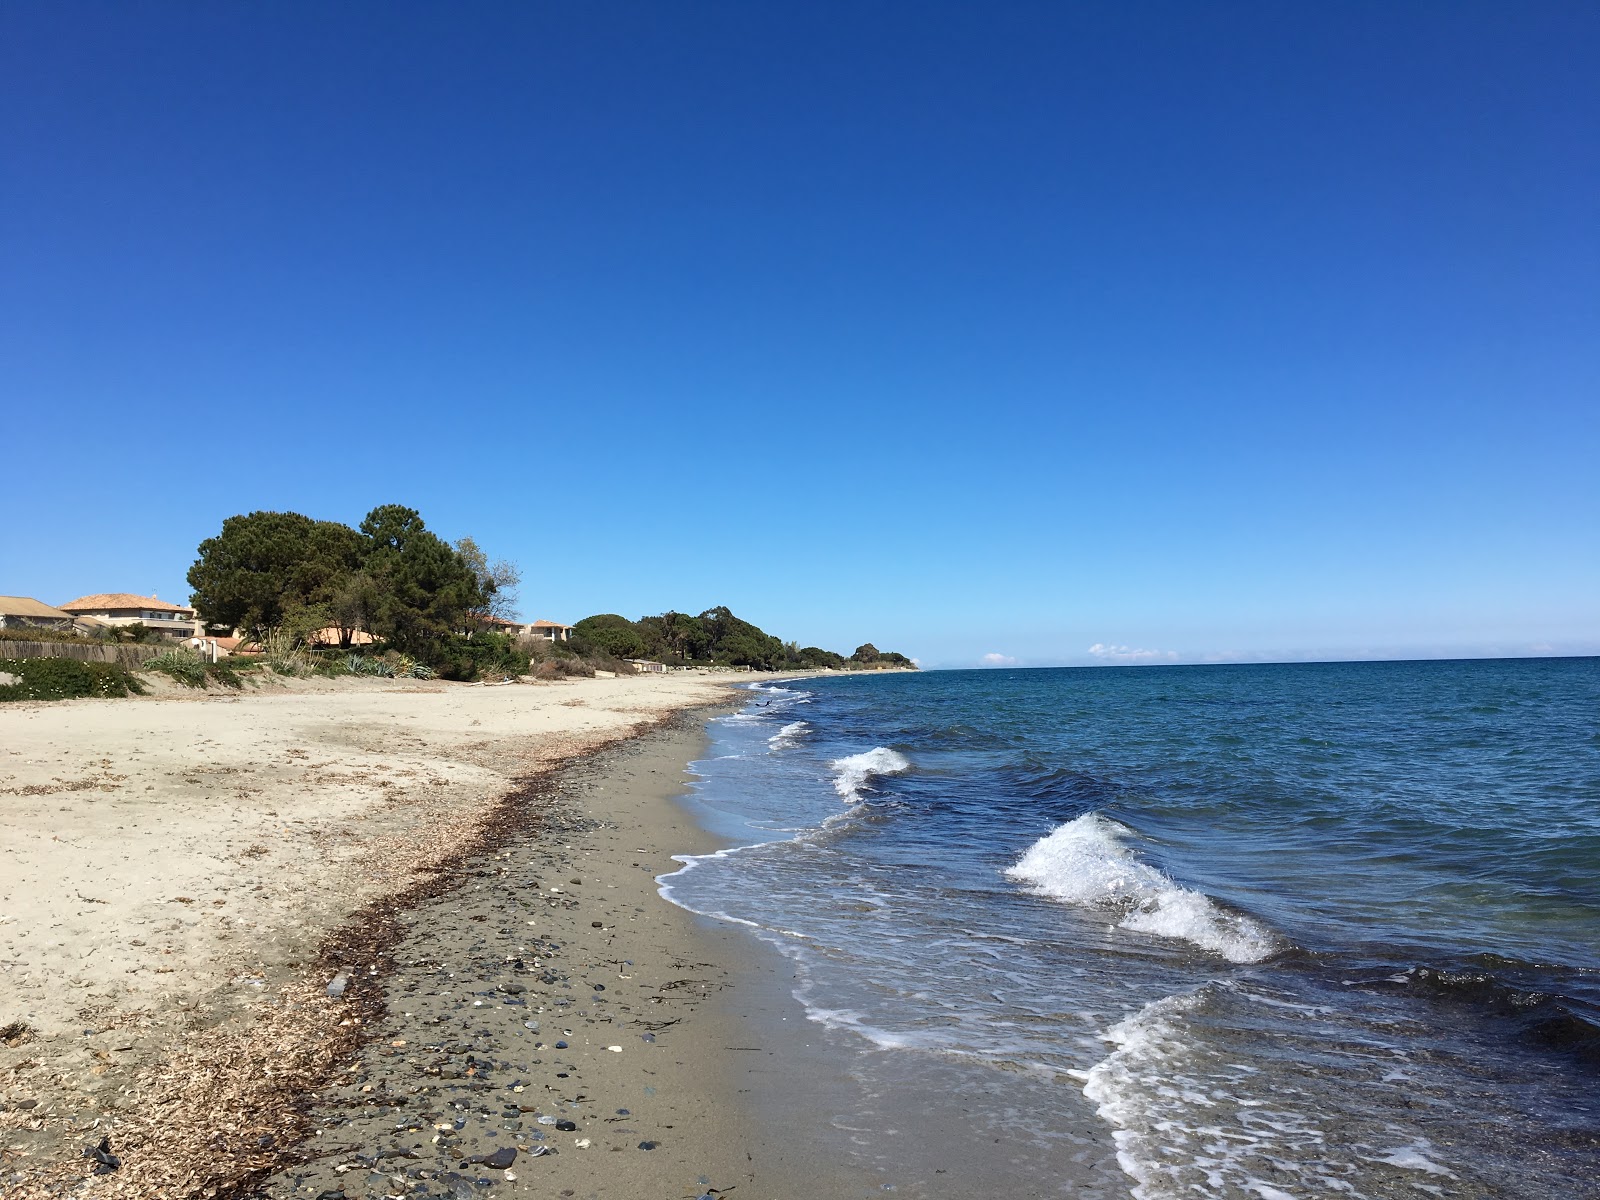 Ponticchio beach'in fotoğrafı turkuaz saf su yüzey ile